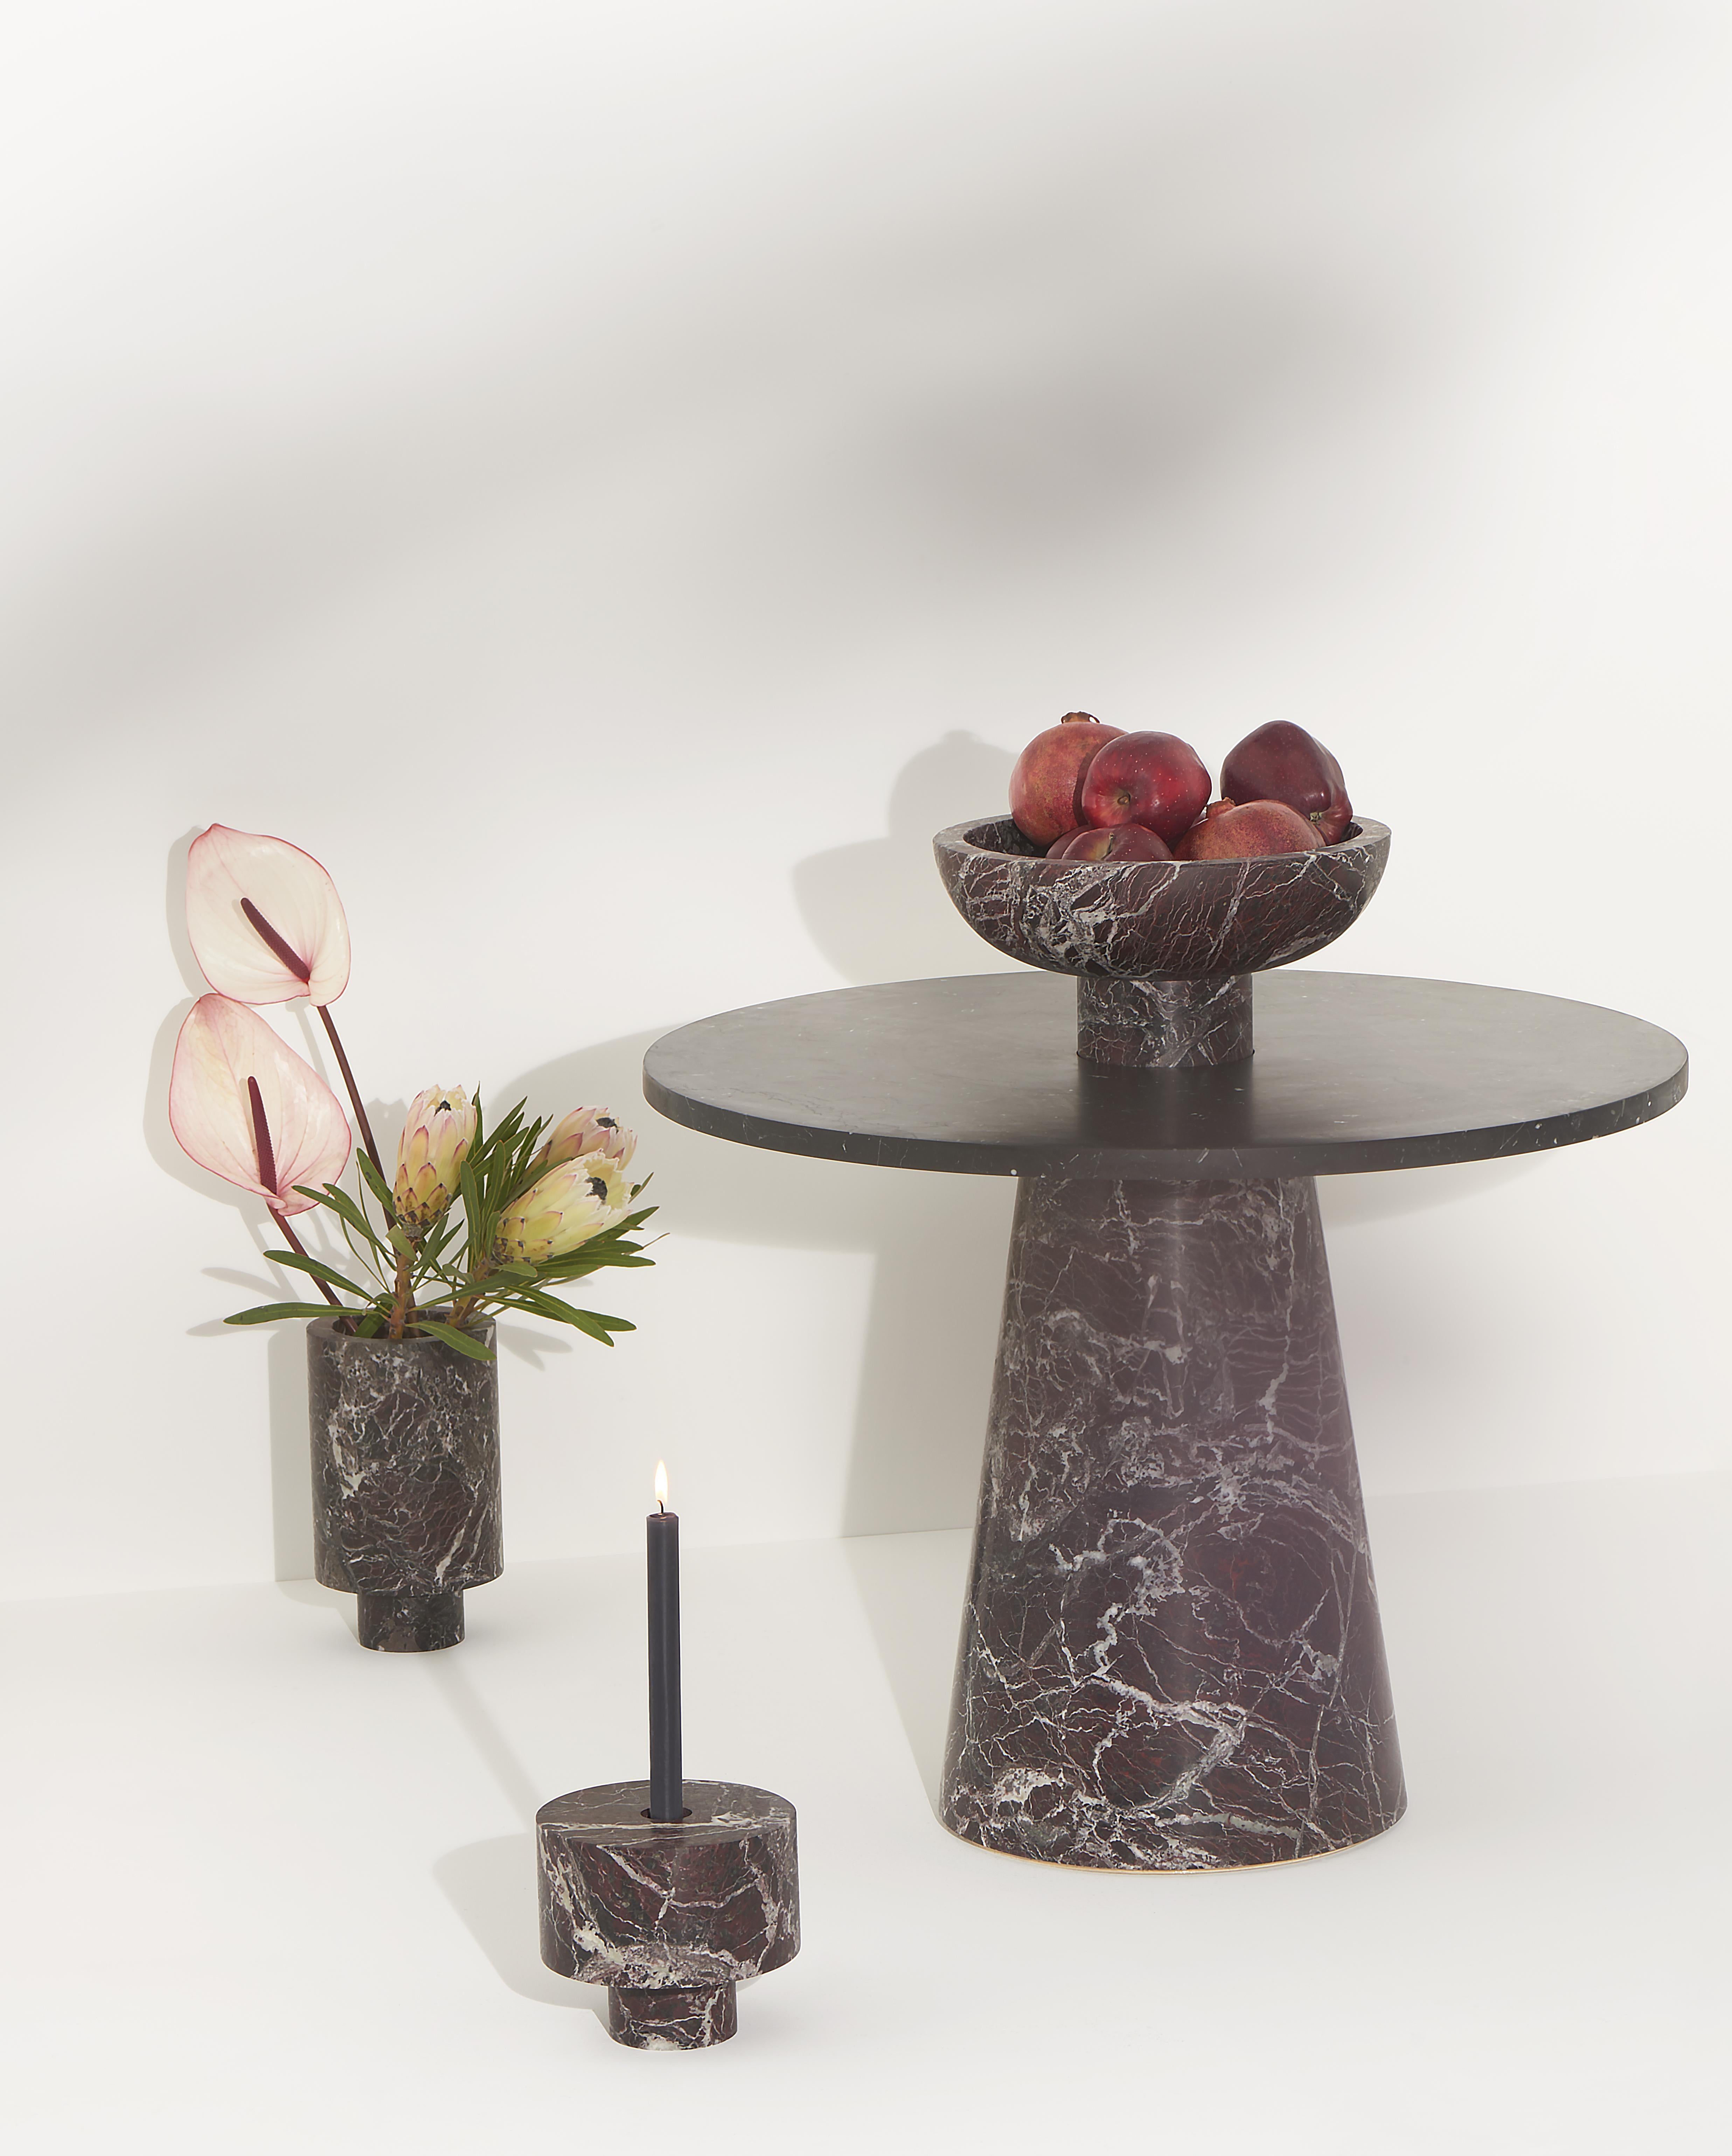 Italian New Modern Candleholder in Black Marble, creator Karen Chekerdjian Stock For Sale